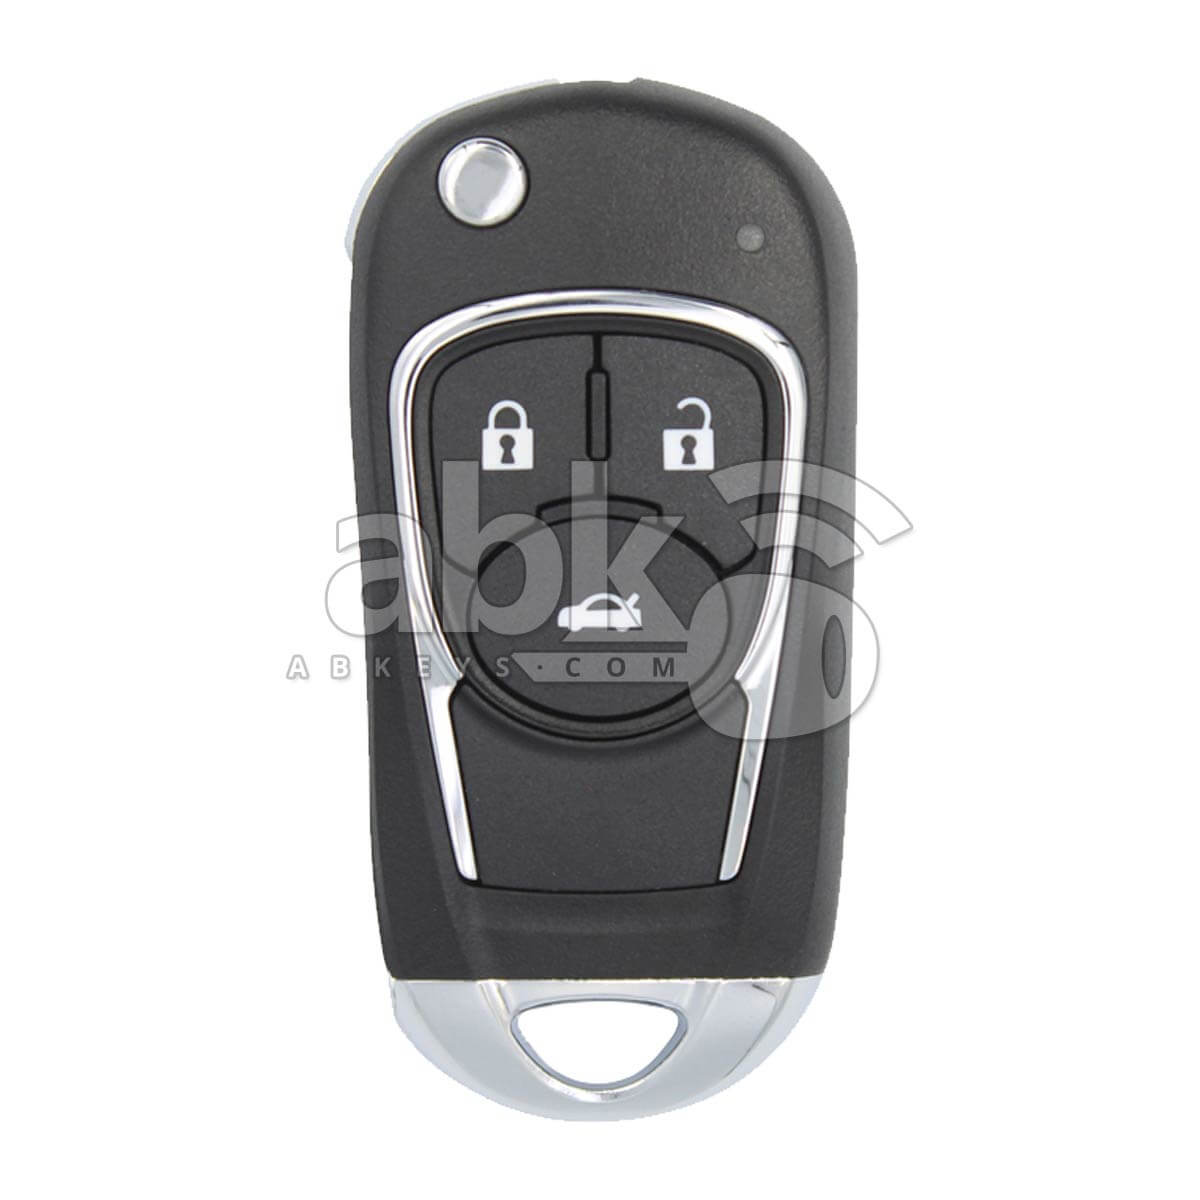 Xhorse VVDI Key Tool VVDI2 Buick Style Wired Flip Remote 3Buttons XKBU03EN - ABK-1015-XKBU03EN - 